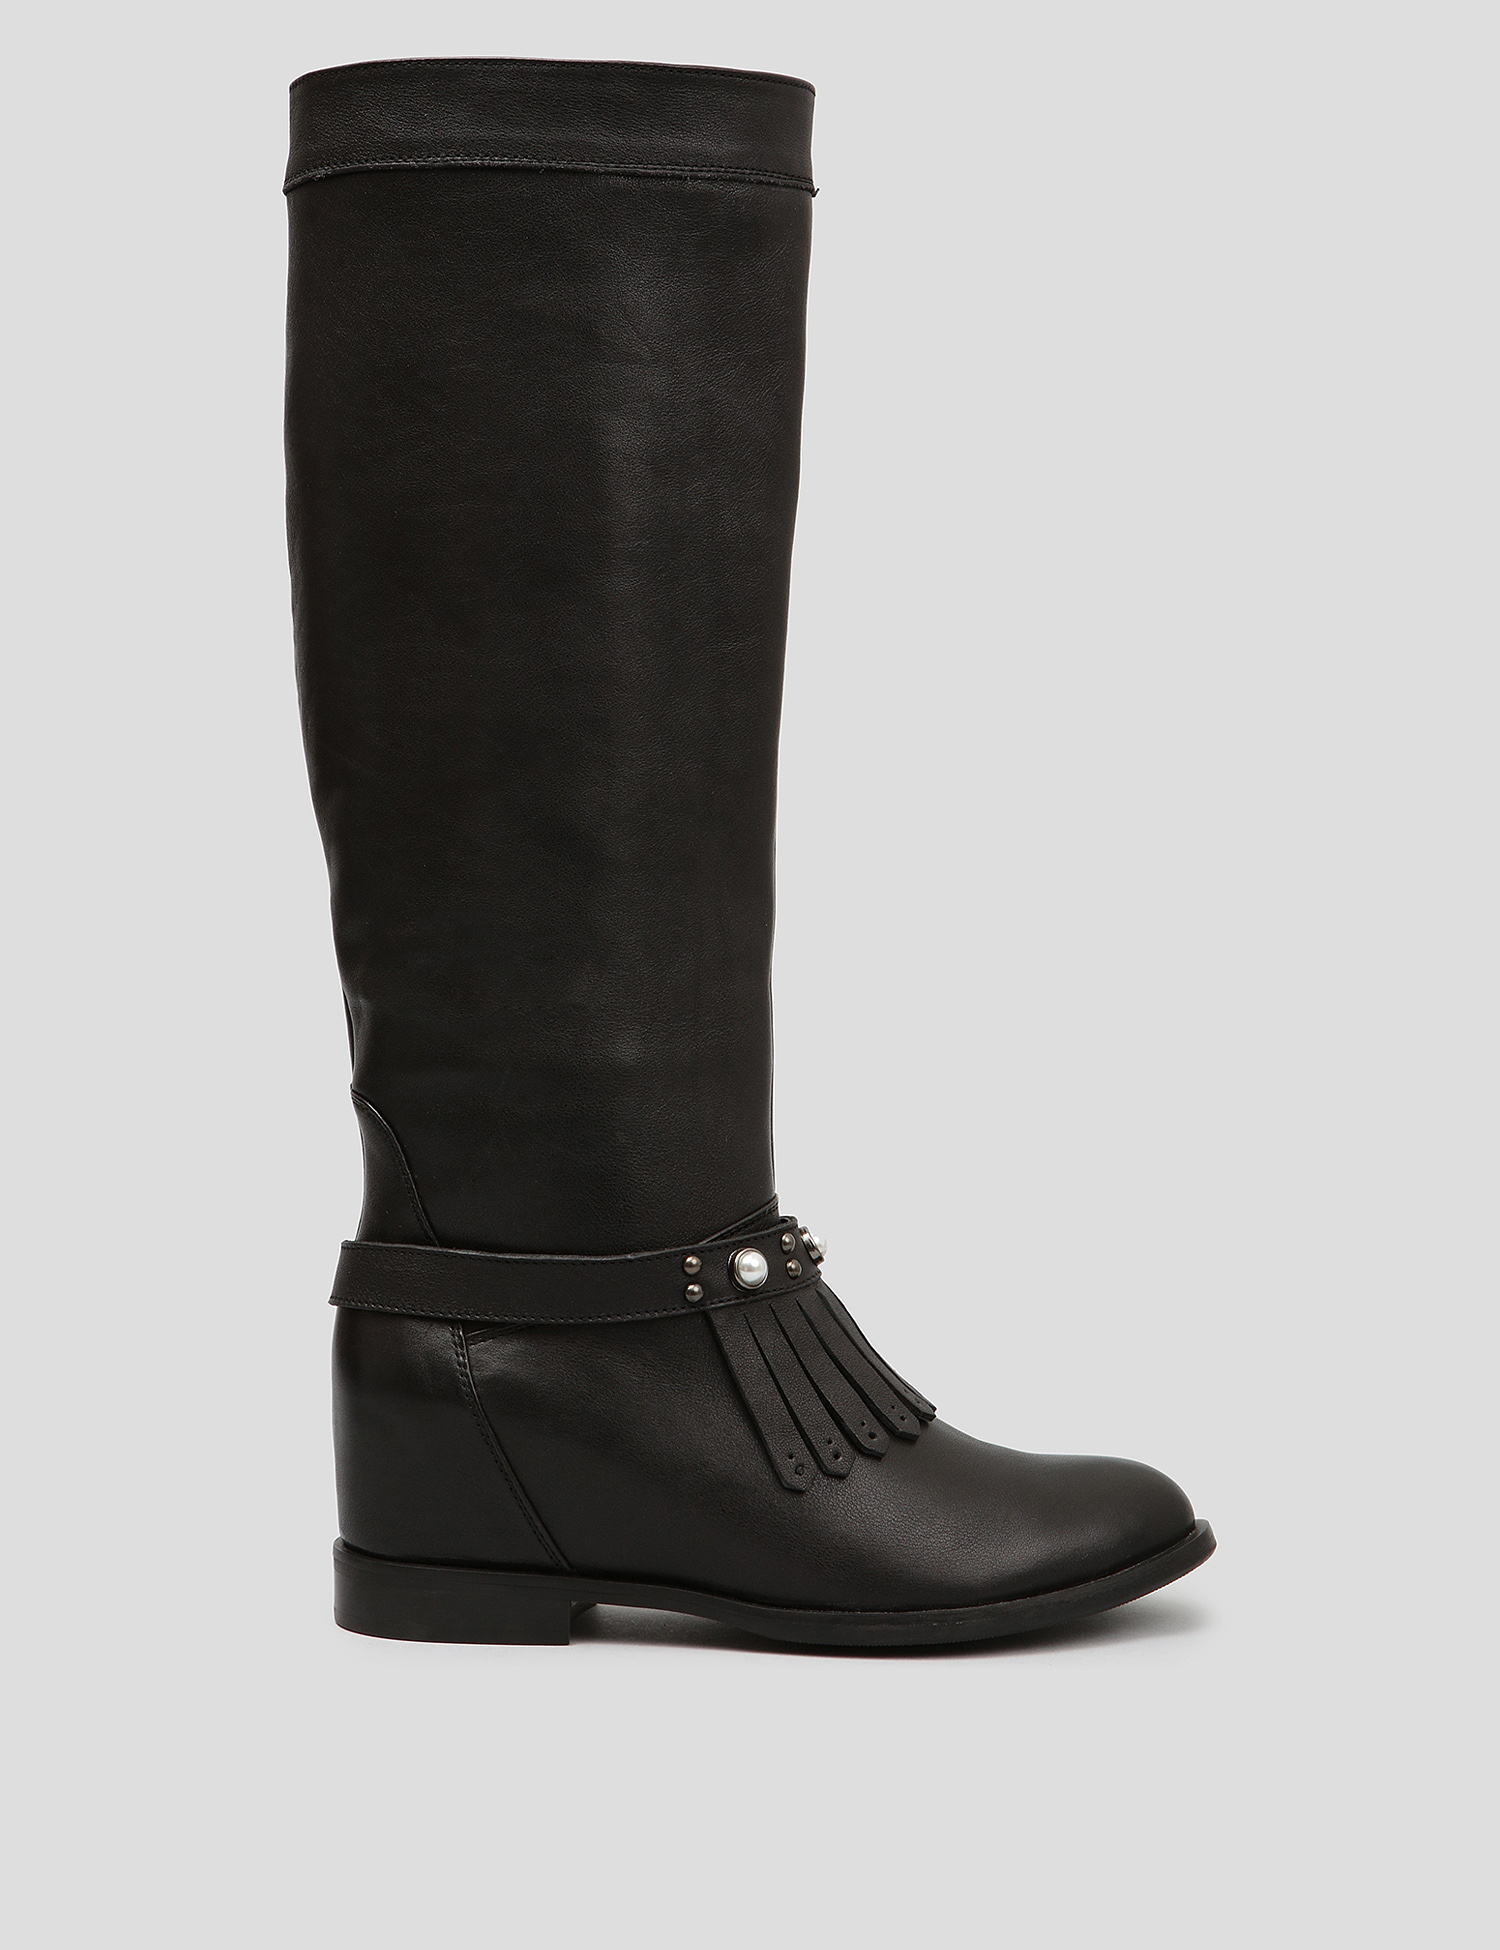 Картинка Жіночі чорні шкіряні чоботи	